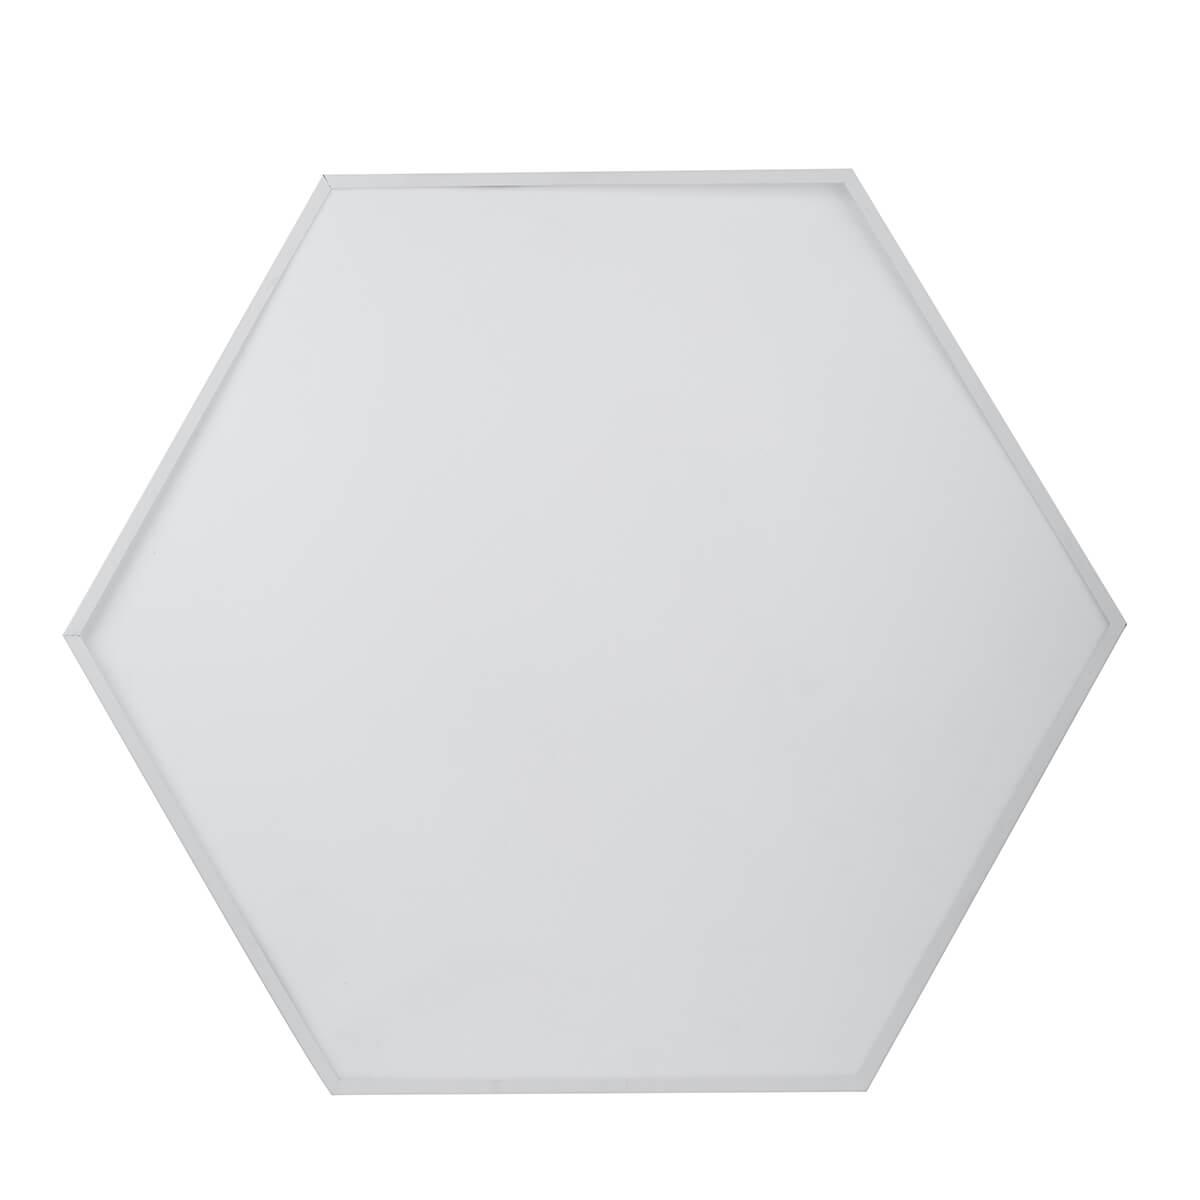 подвесной светодиодный cветильник geometria эра hexagon spo-121-w-40k-038 38вт 4000к белый б0050550